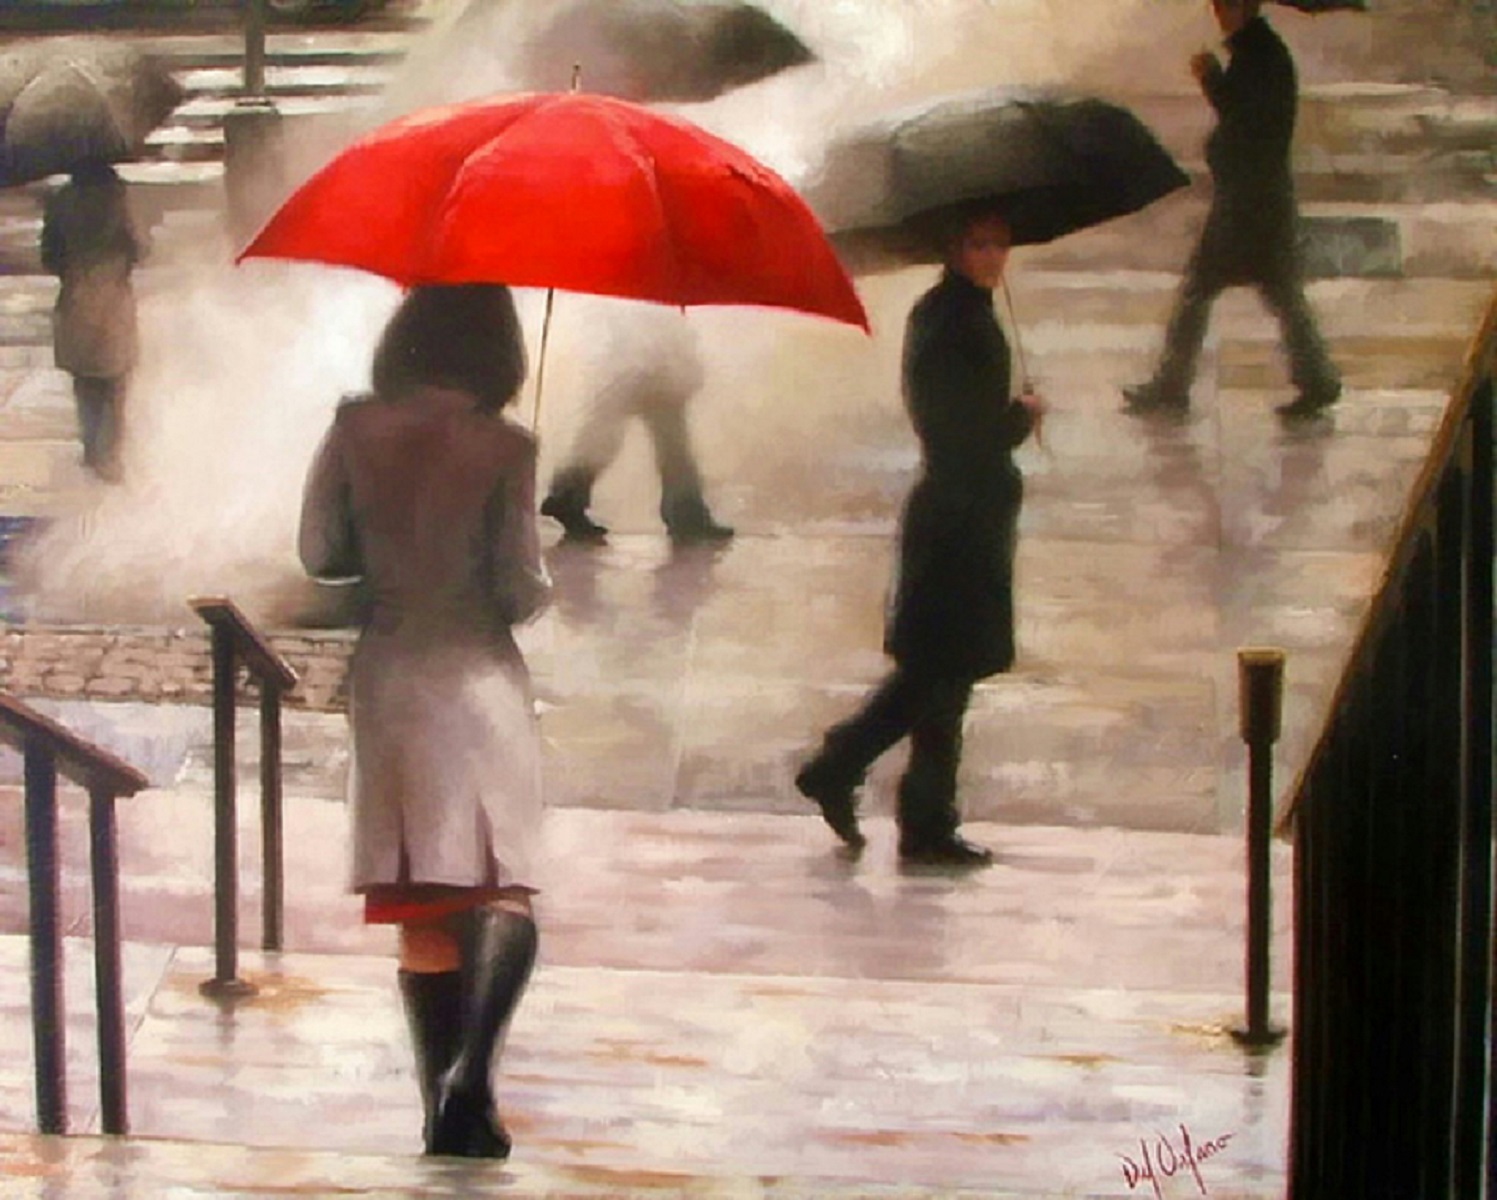 Дождь без перерыва. Даниэль дель Орфано. Даниэль дель Орфано художник. Даниэль дель Орфано красный зонтик. Даниэль Орфано жизнь с красным зонтиком.